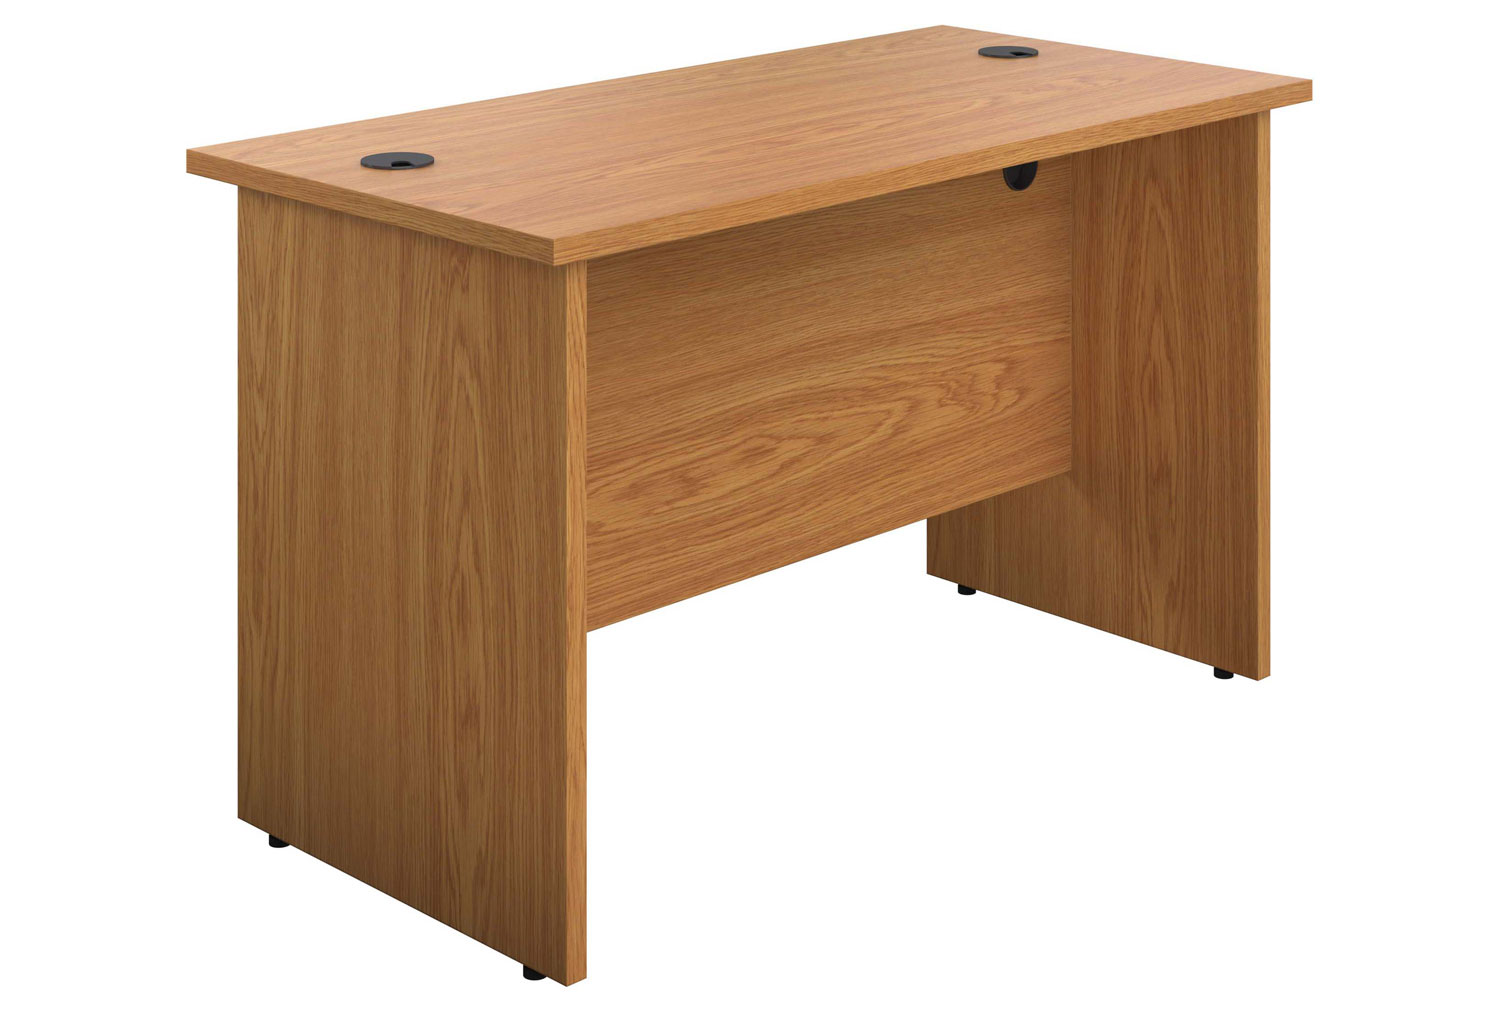 Proteus Panel End Narrow Rectangular Office Desk, 120wx60dx73h (cm), Oak